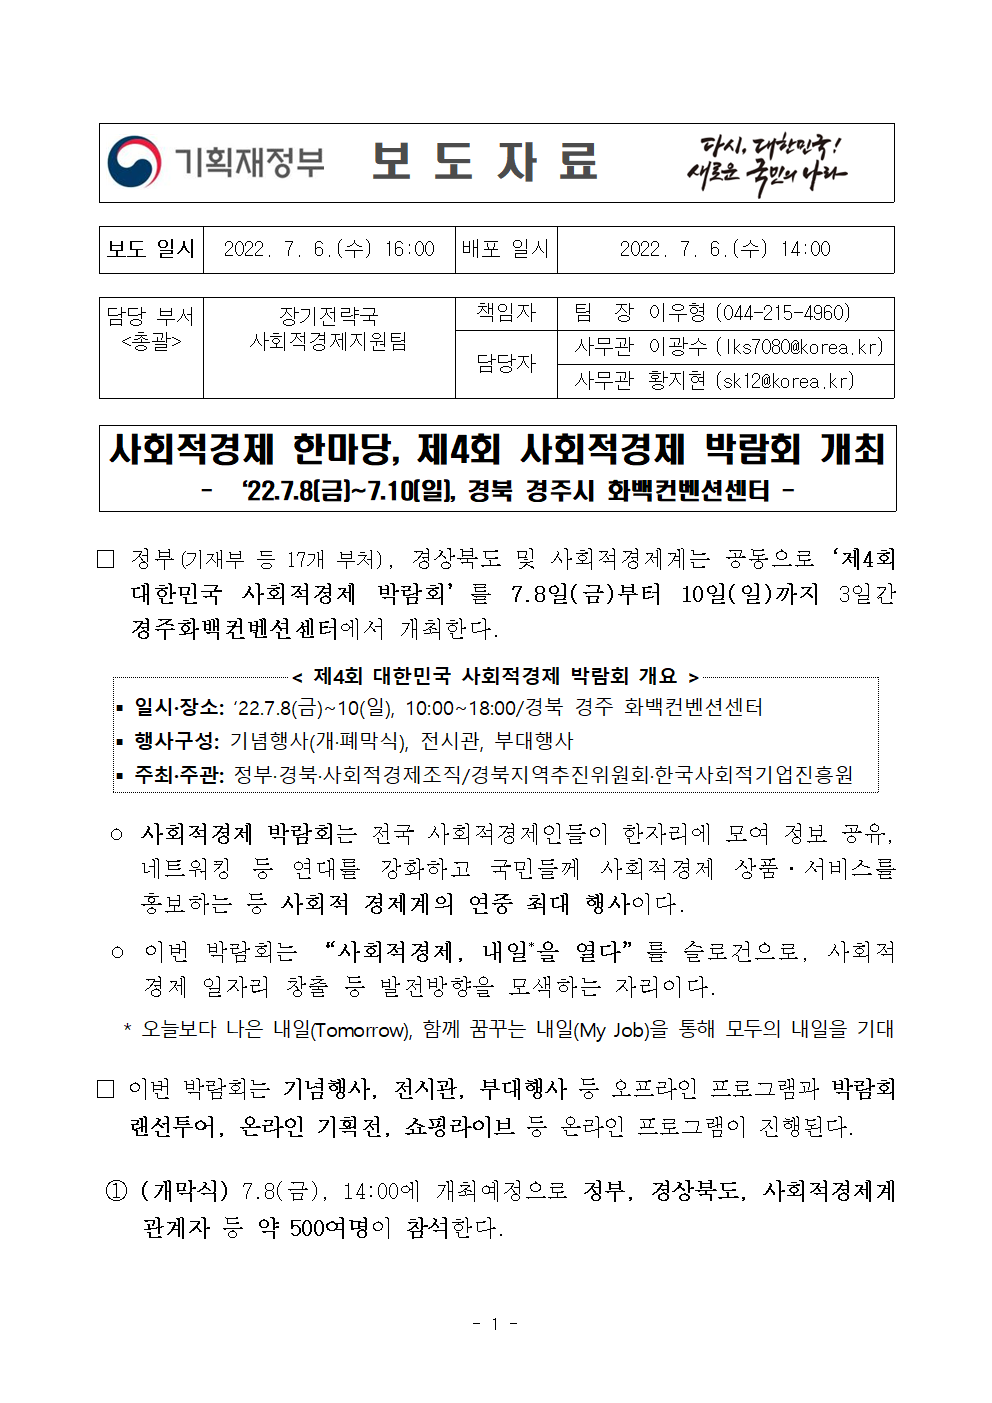 제4회 대한민국 사회적경제 박람회 개최